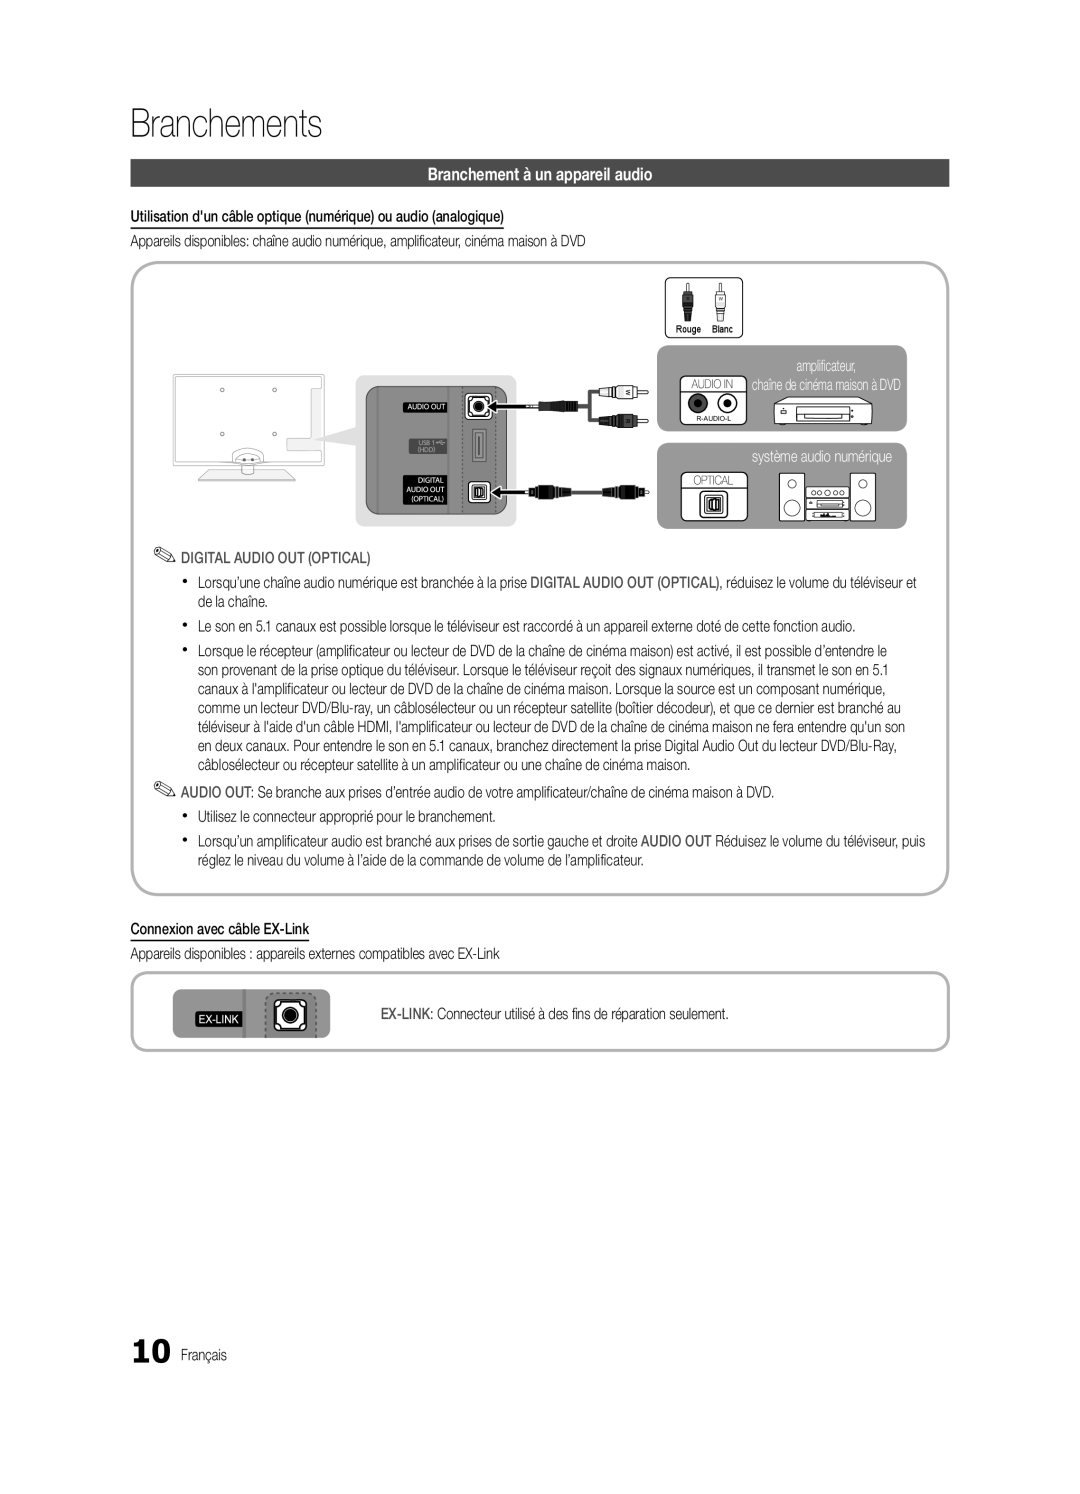 Samsung BN68-03004B-02 Branchement à un appareil audio, amplificateur AUDIO IN chaîne de cinéma maison à DVD, Branchements 